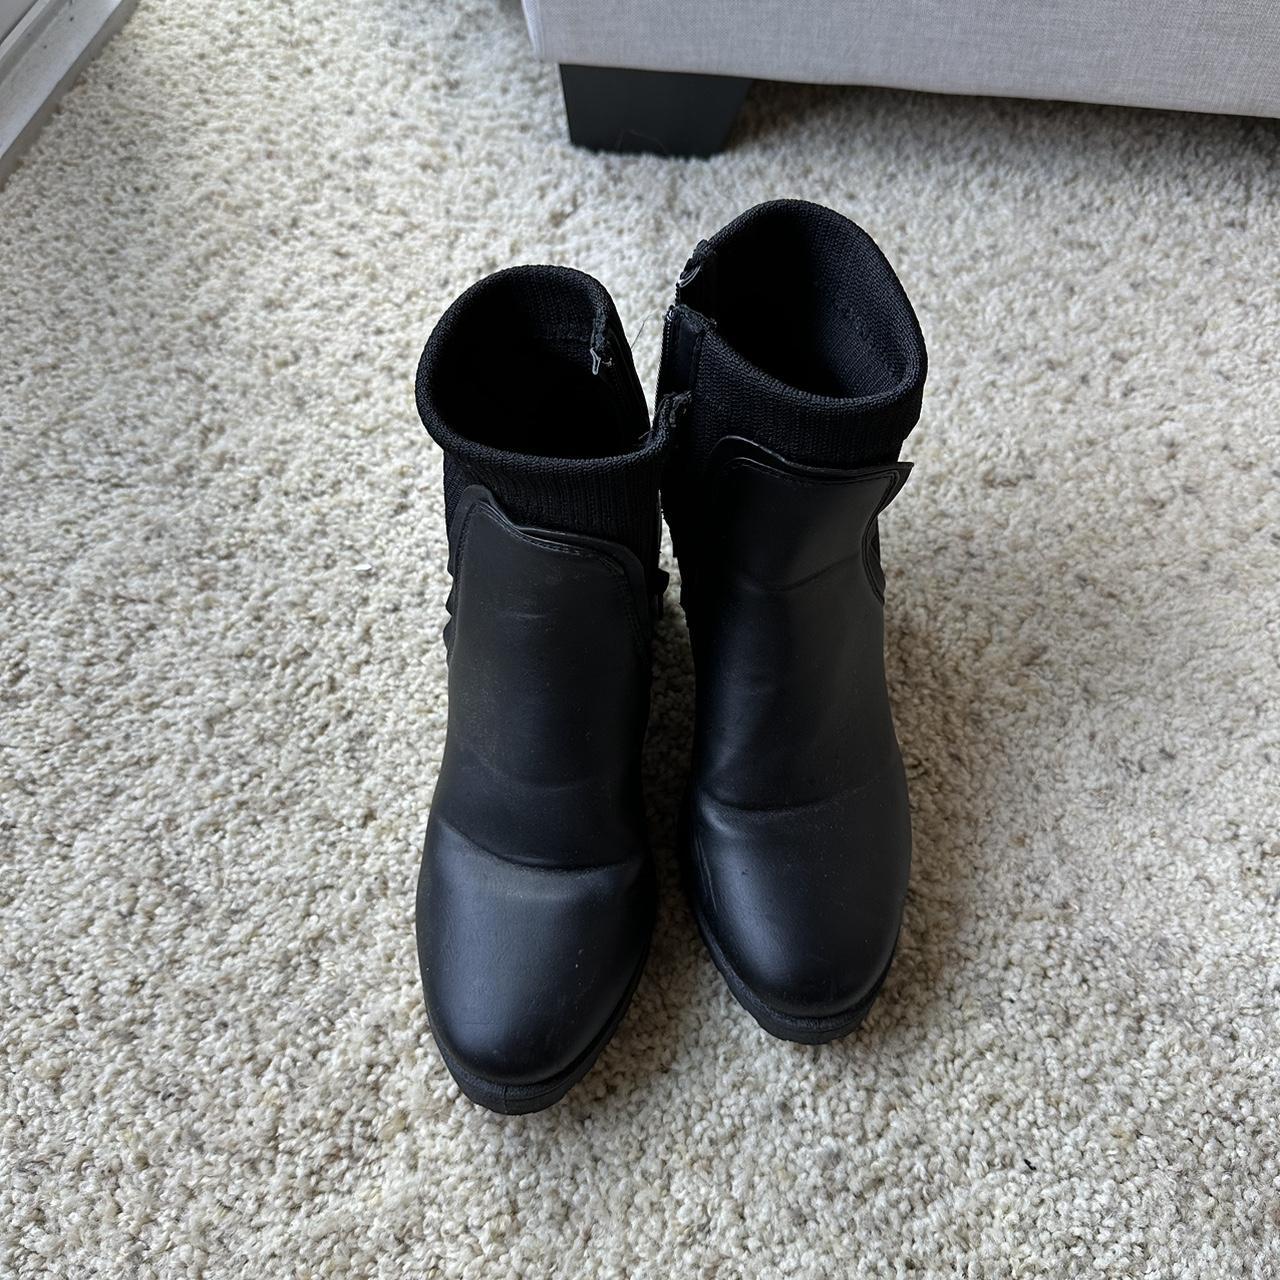 Waterproof black heeled booties. In good condition,... - Depop